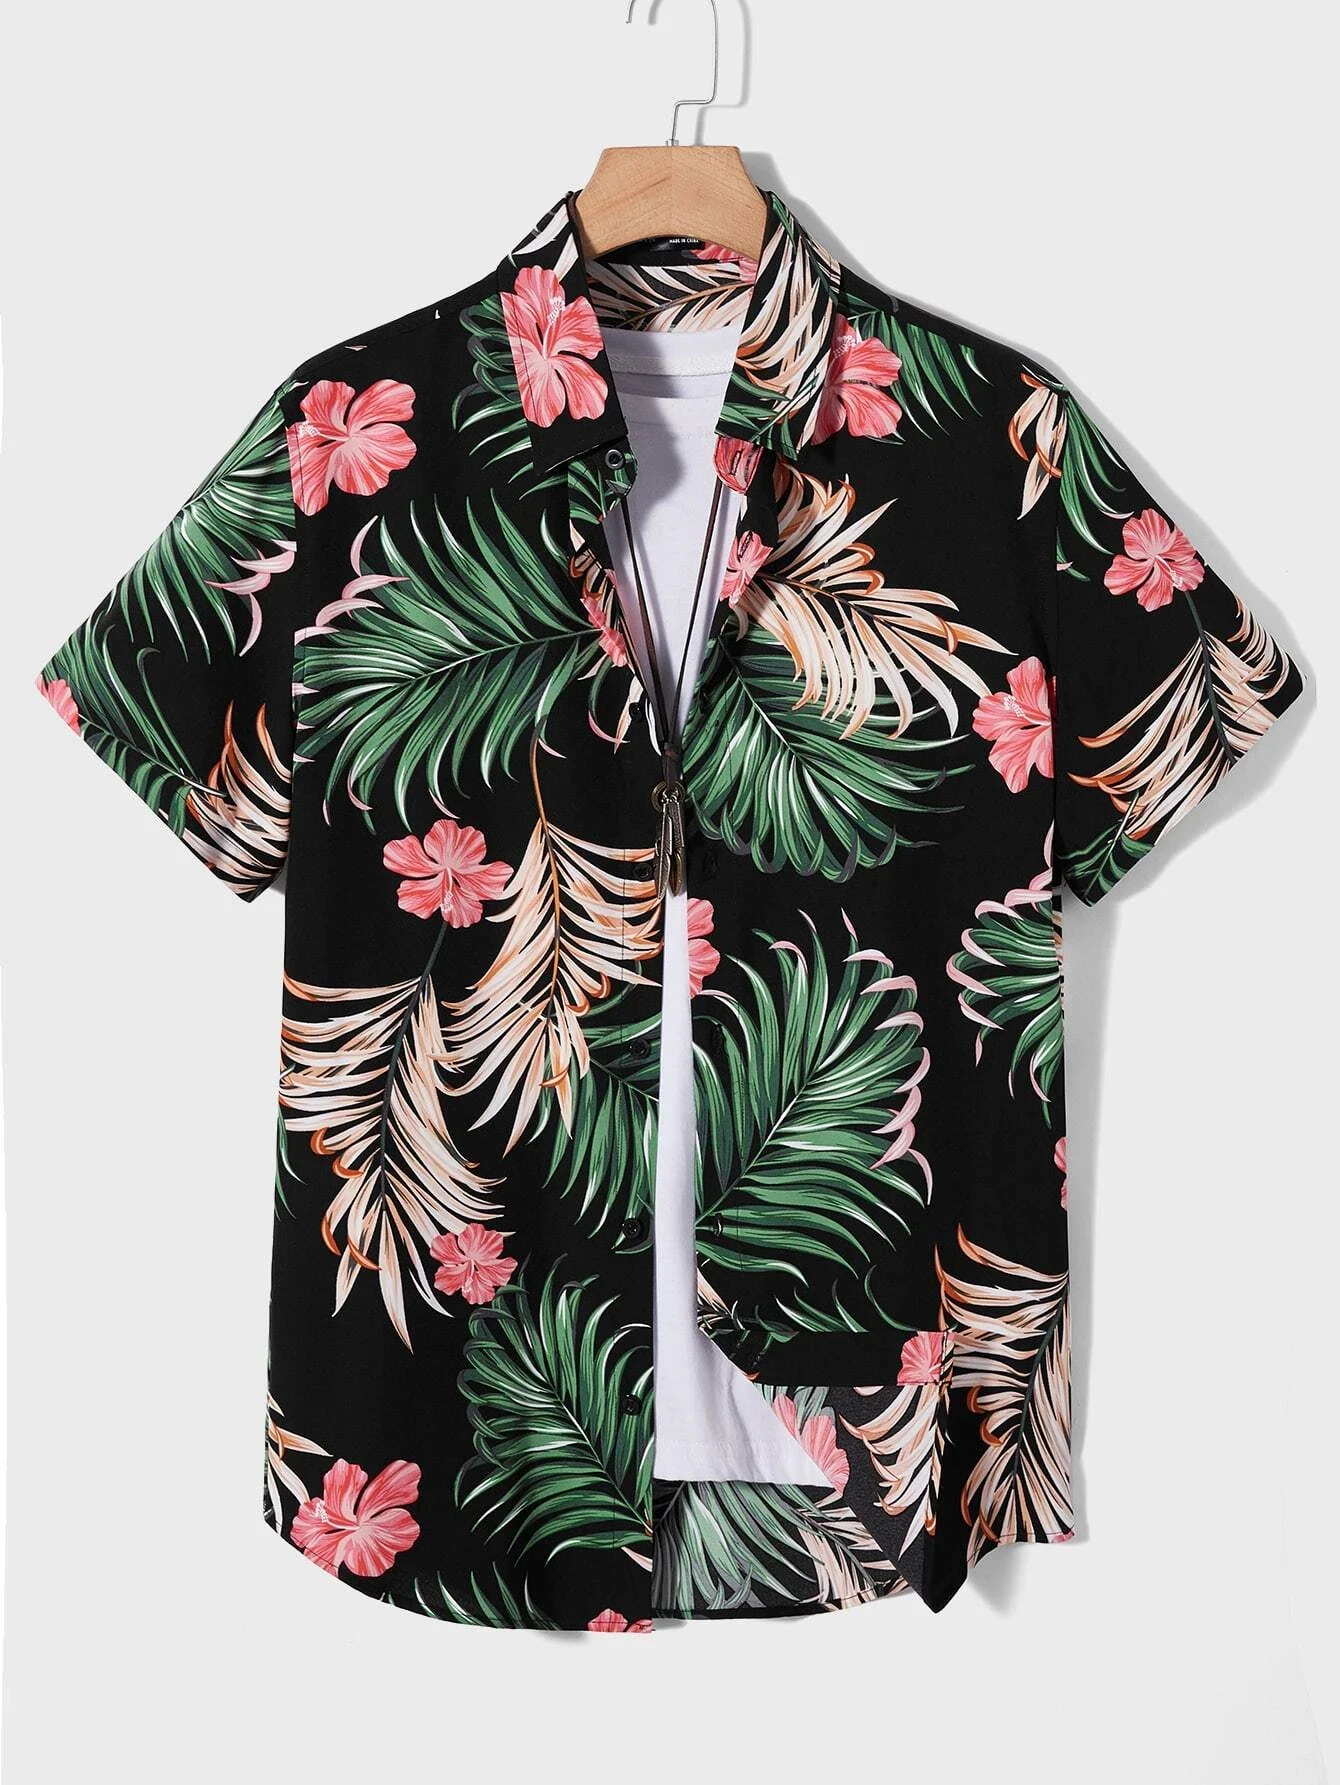 

Men's and Women's Summer Short Sleeve Shirts Botanical Floral Print Pattern Seaside Beach Lapel Button Up Shirt Tops